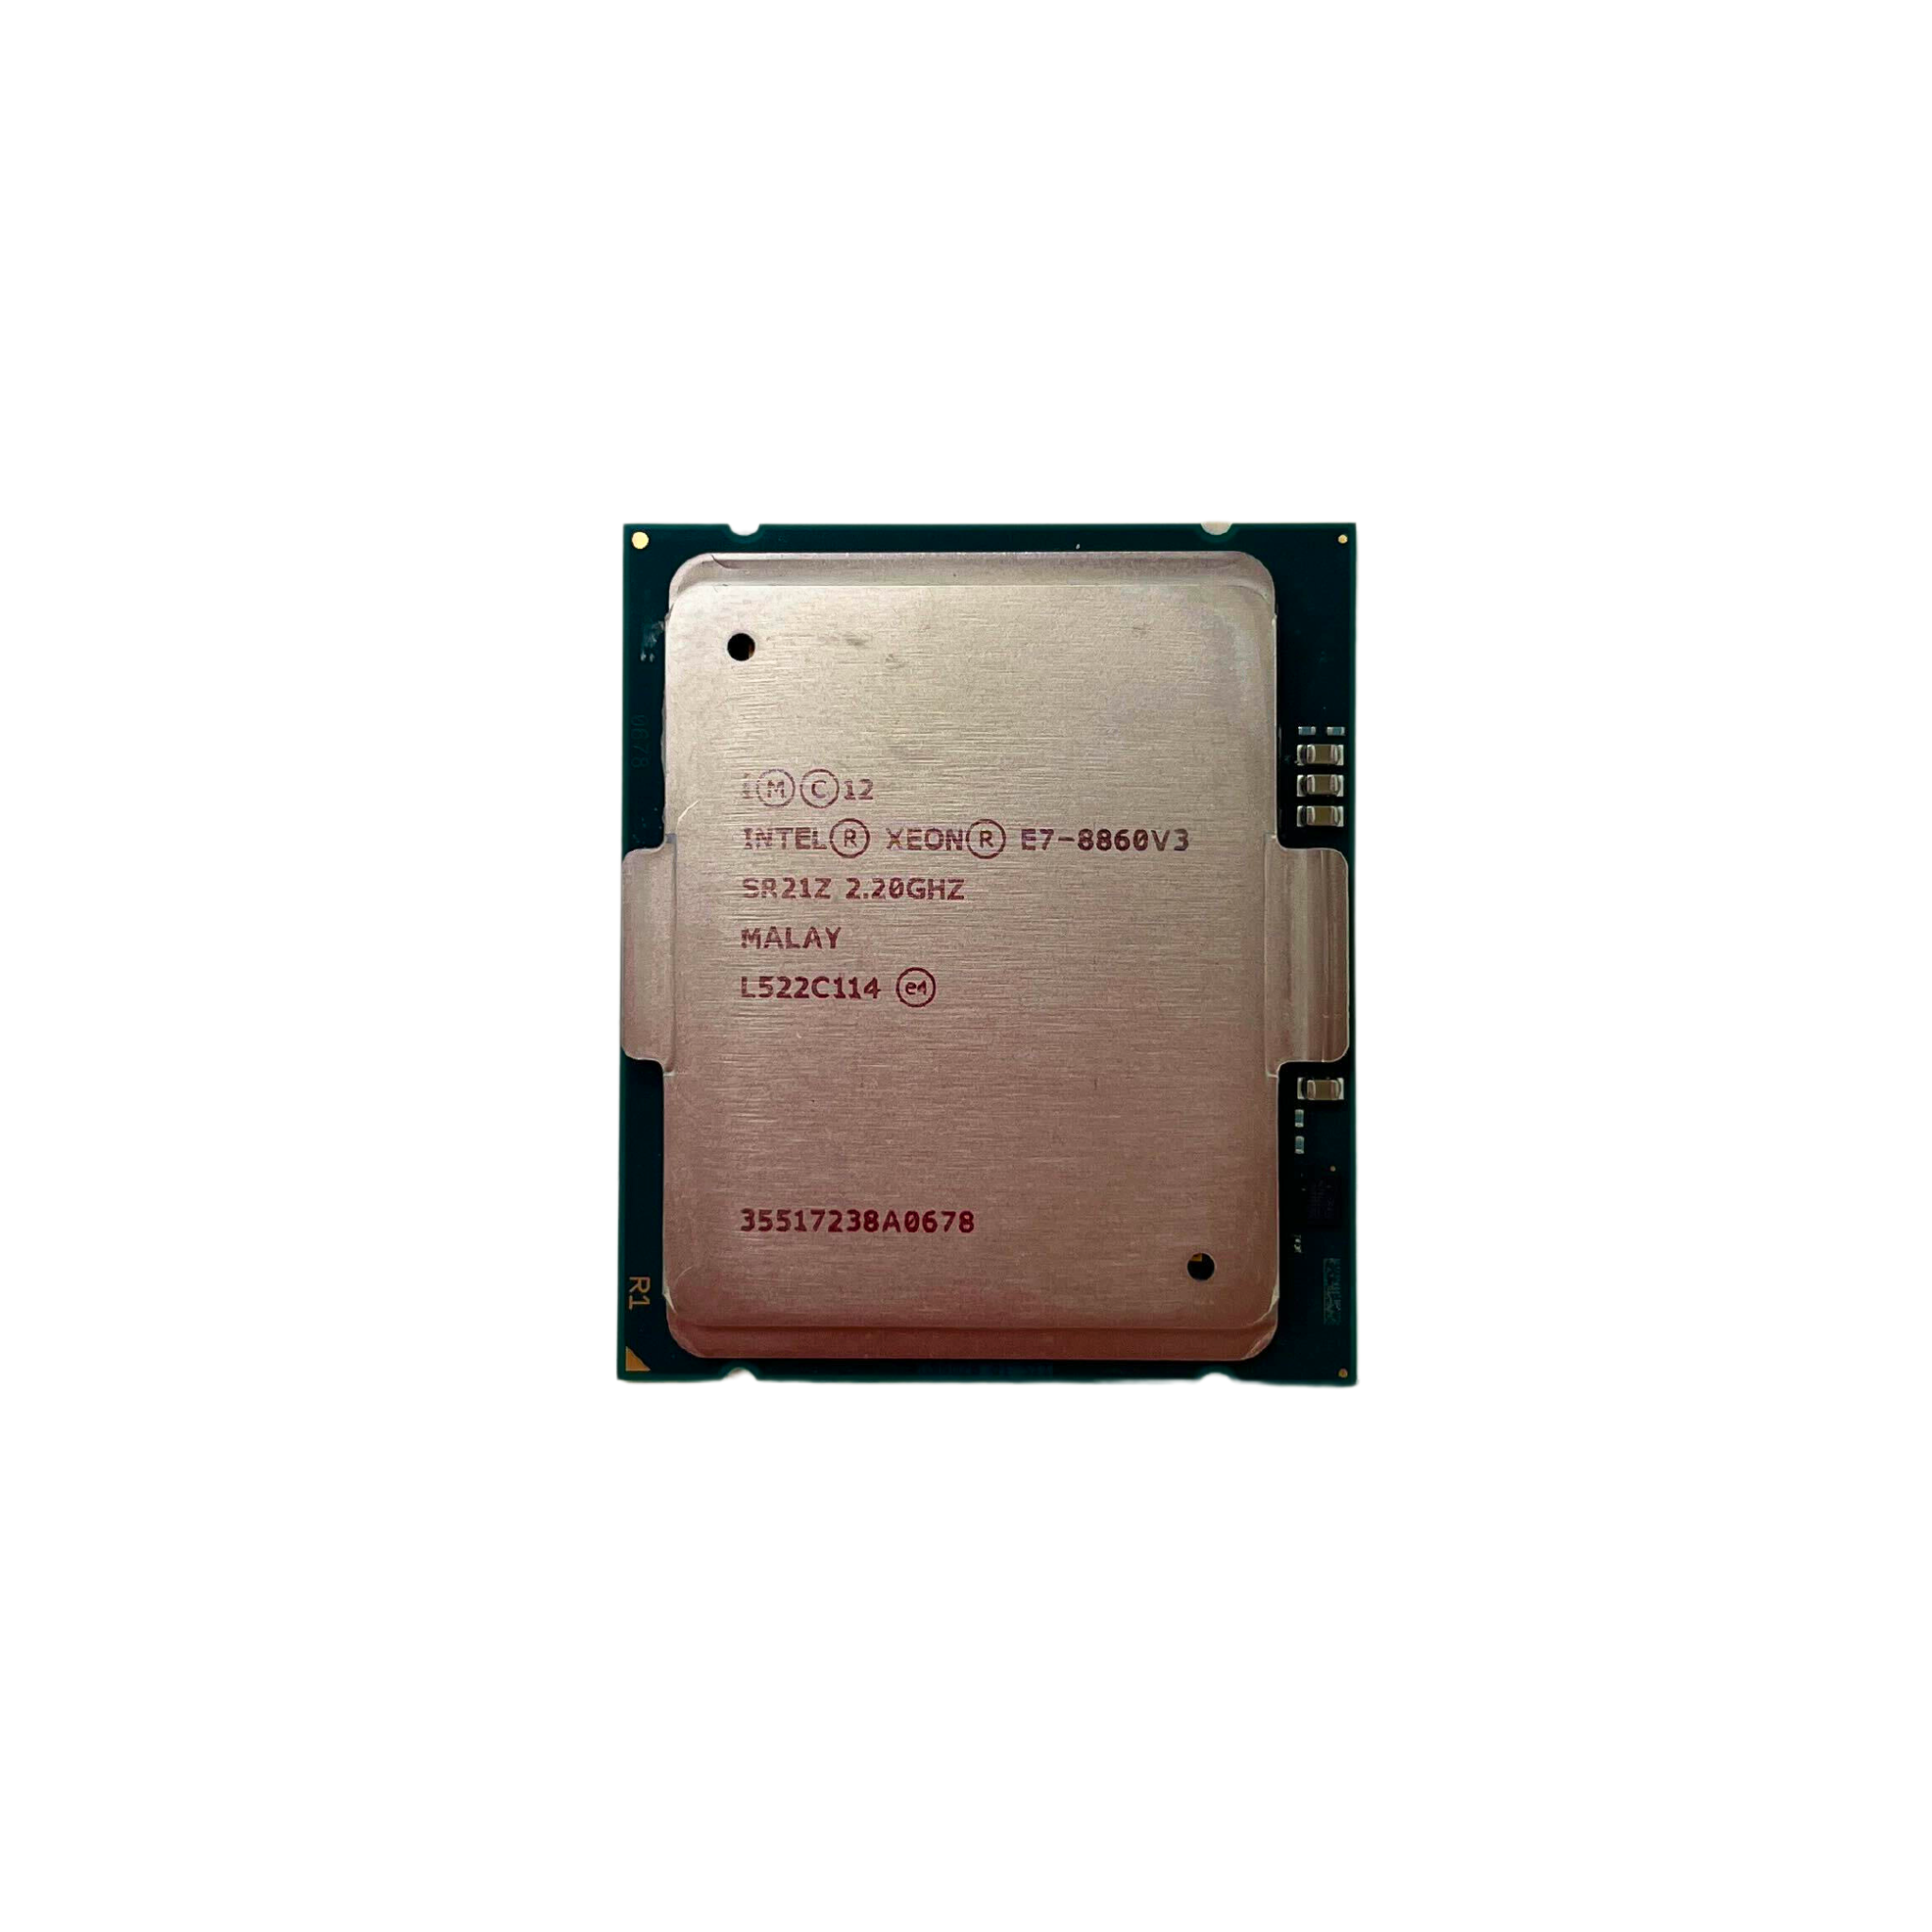 Intel Xeon E7-8860 V3 16-Core 2.2GHz 9.60GT/s QPI 40MB L3 Cache Socket LGA2011 Processor (SR21Z)